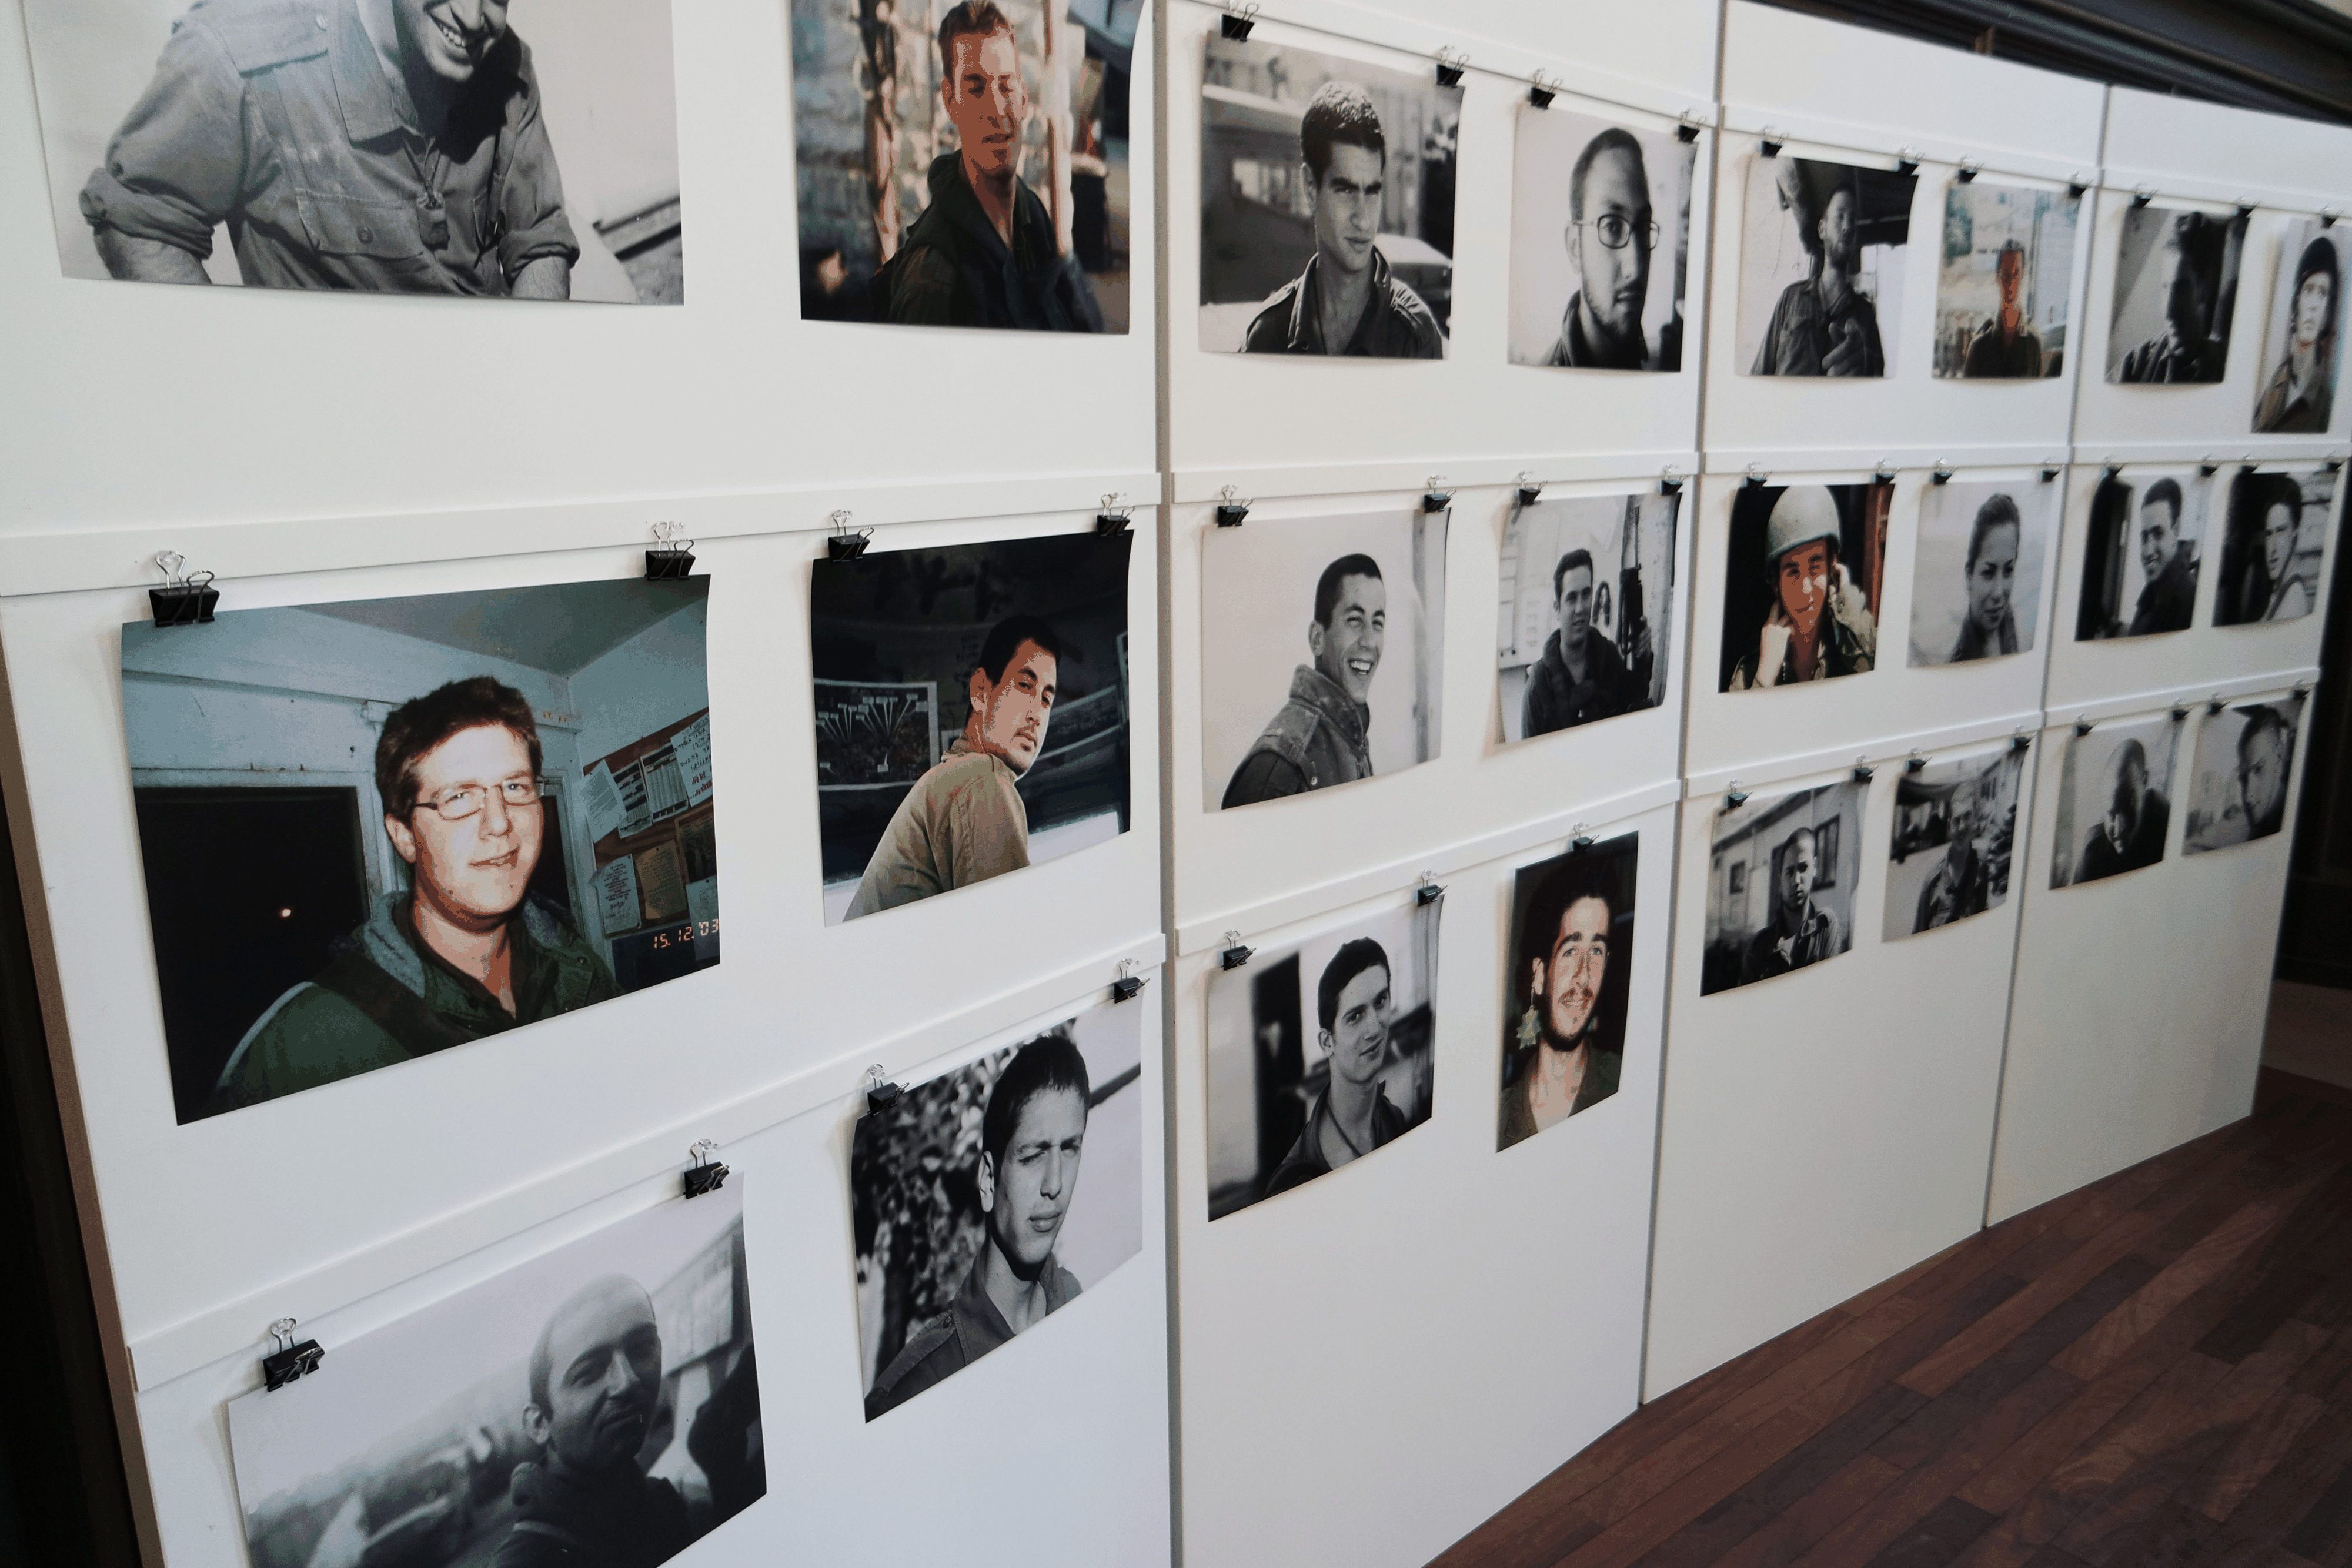 Das Ende der Ausstellung bildet diese Wand mit den Porträts von Soldaten, die das Schweigen gebrochen haben.